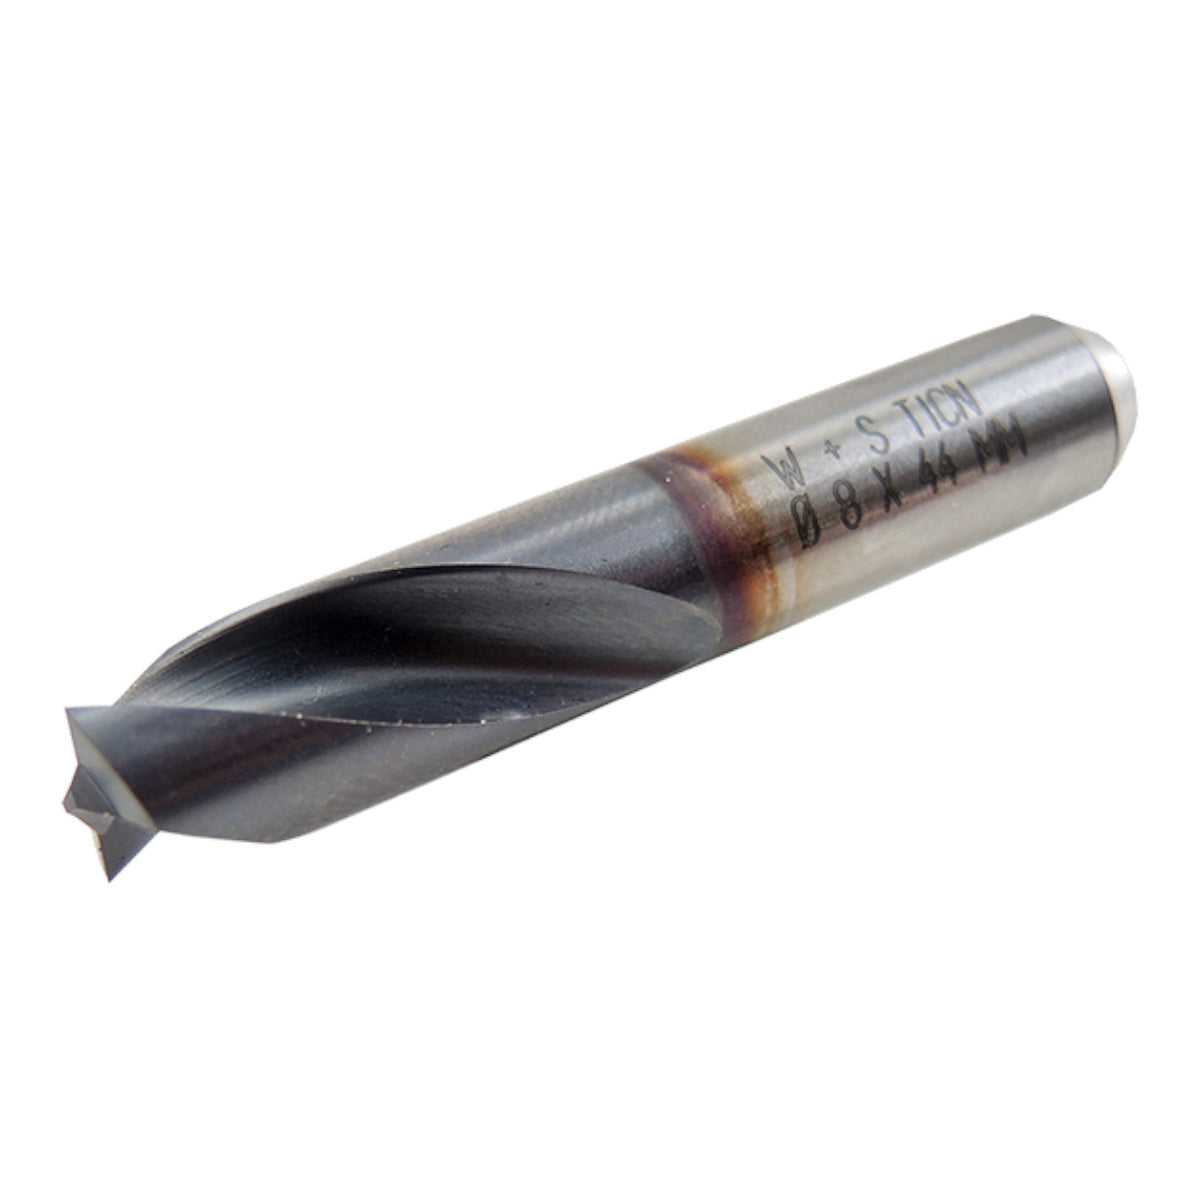 Spot weld cutter Z2 | Ø 8 × 44 mm | TiCN